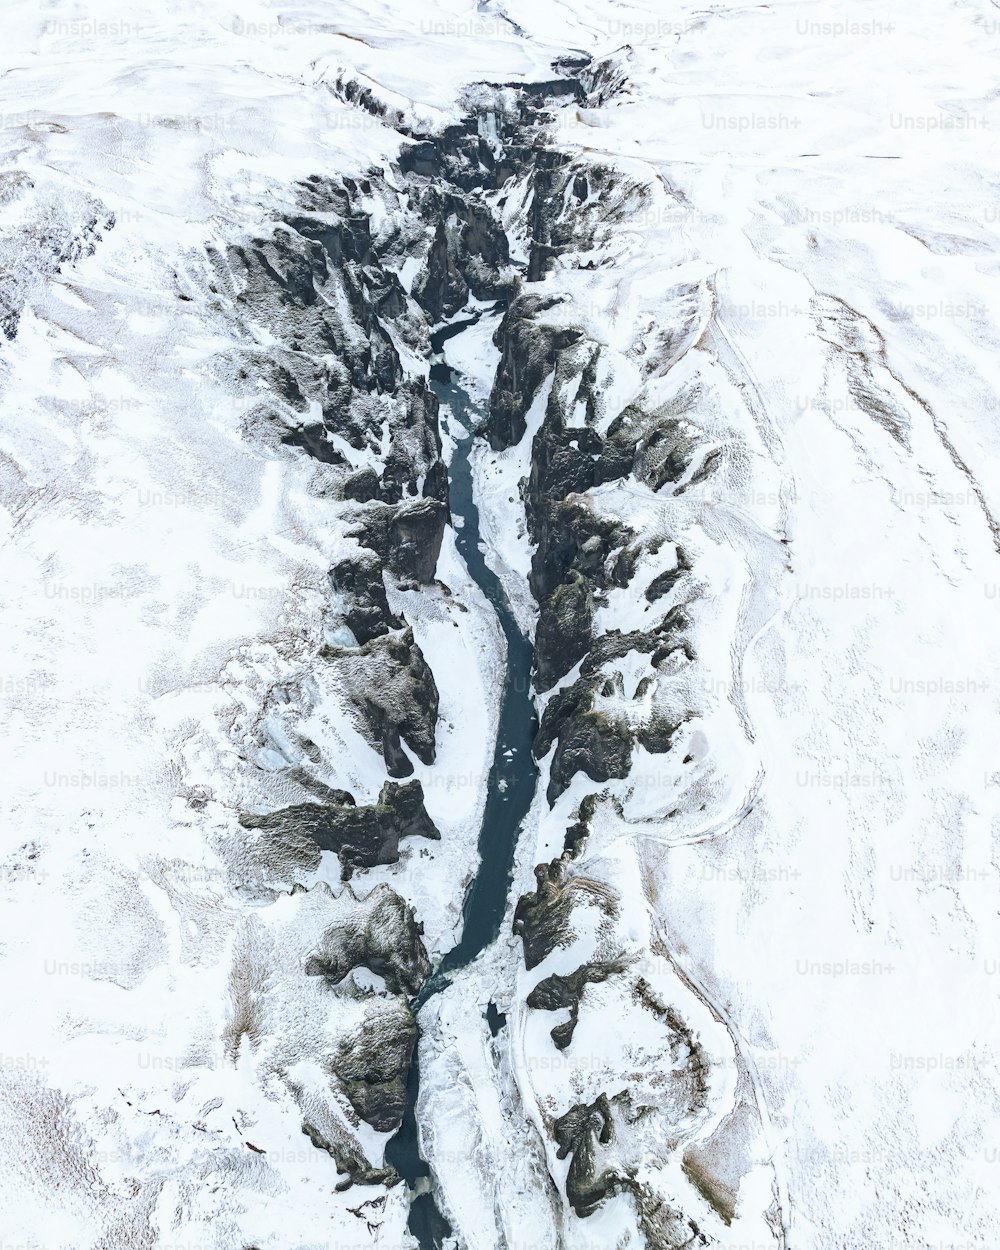 une vue aérienne d’une rivière qui traverse un paysage enneigé